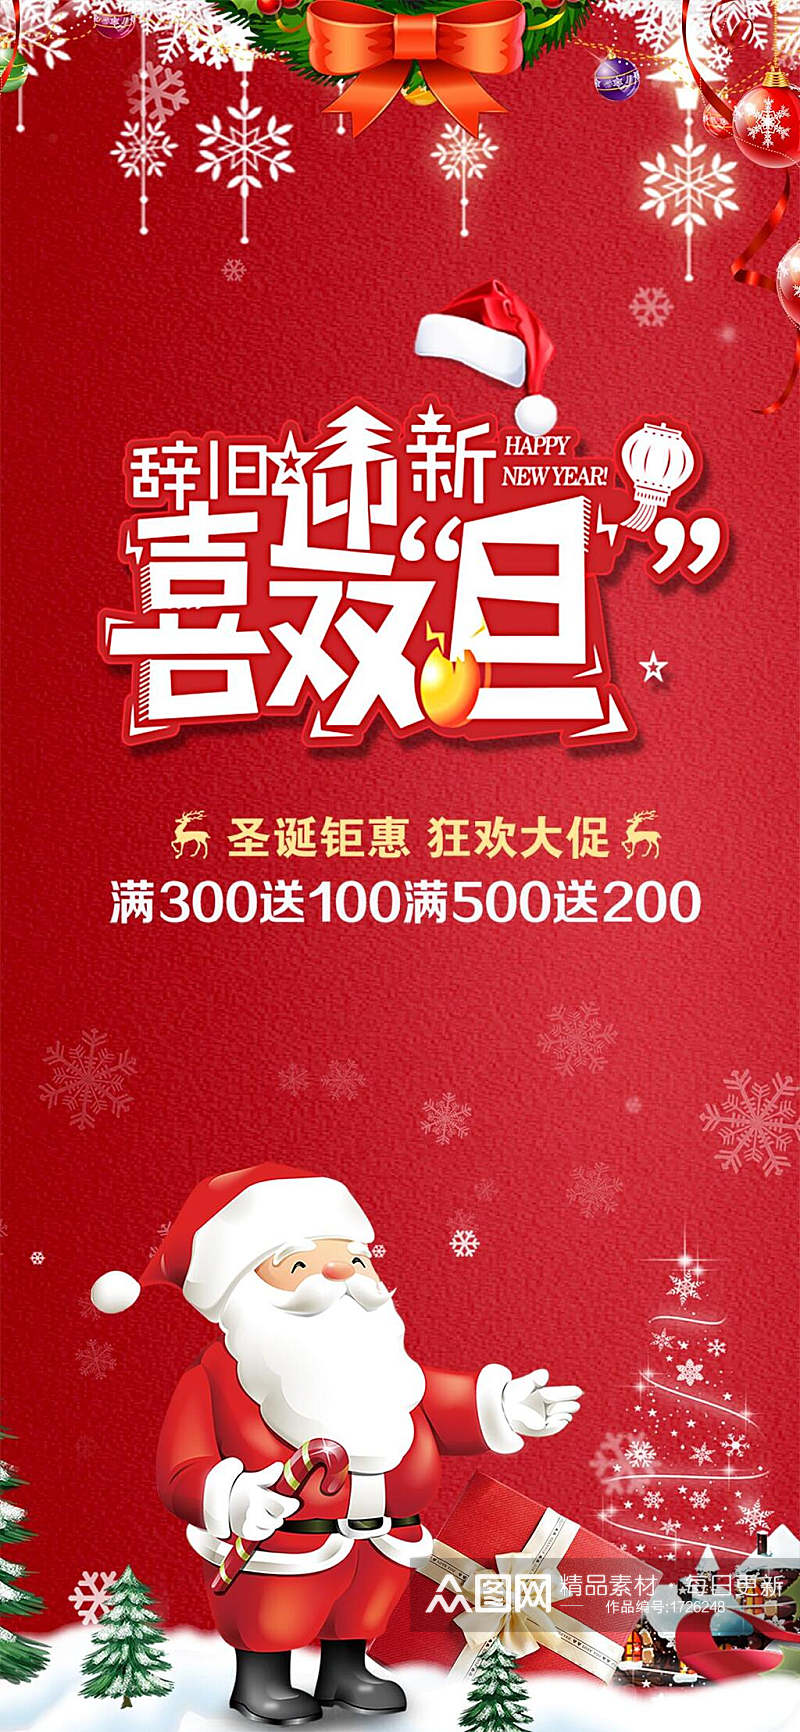 喜迎双旦圣诞节H长图手机海报banner素材